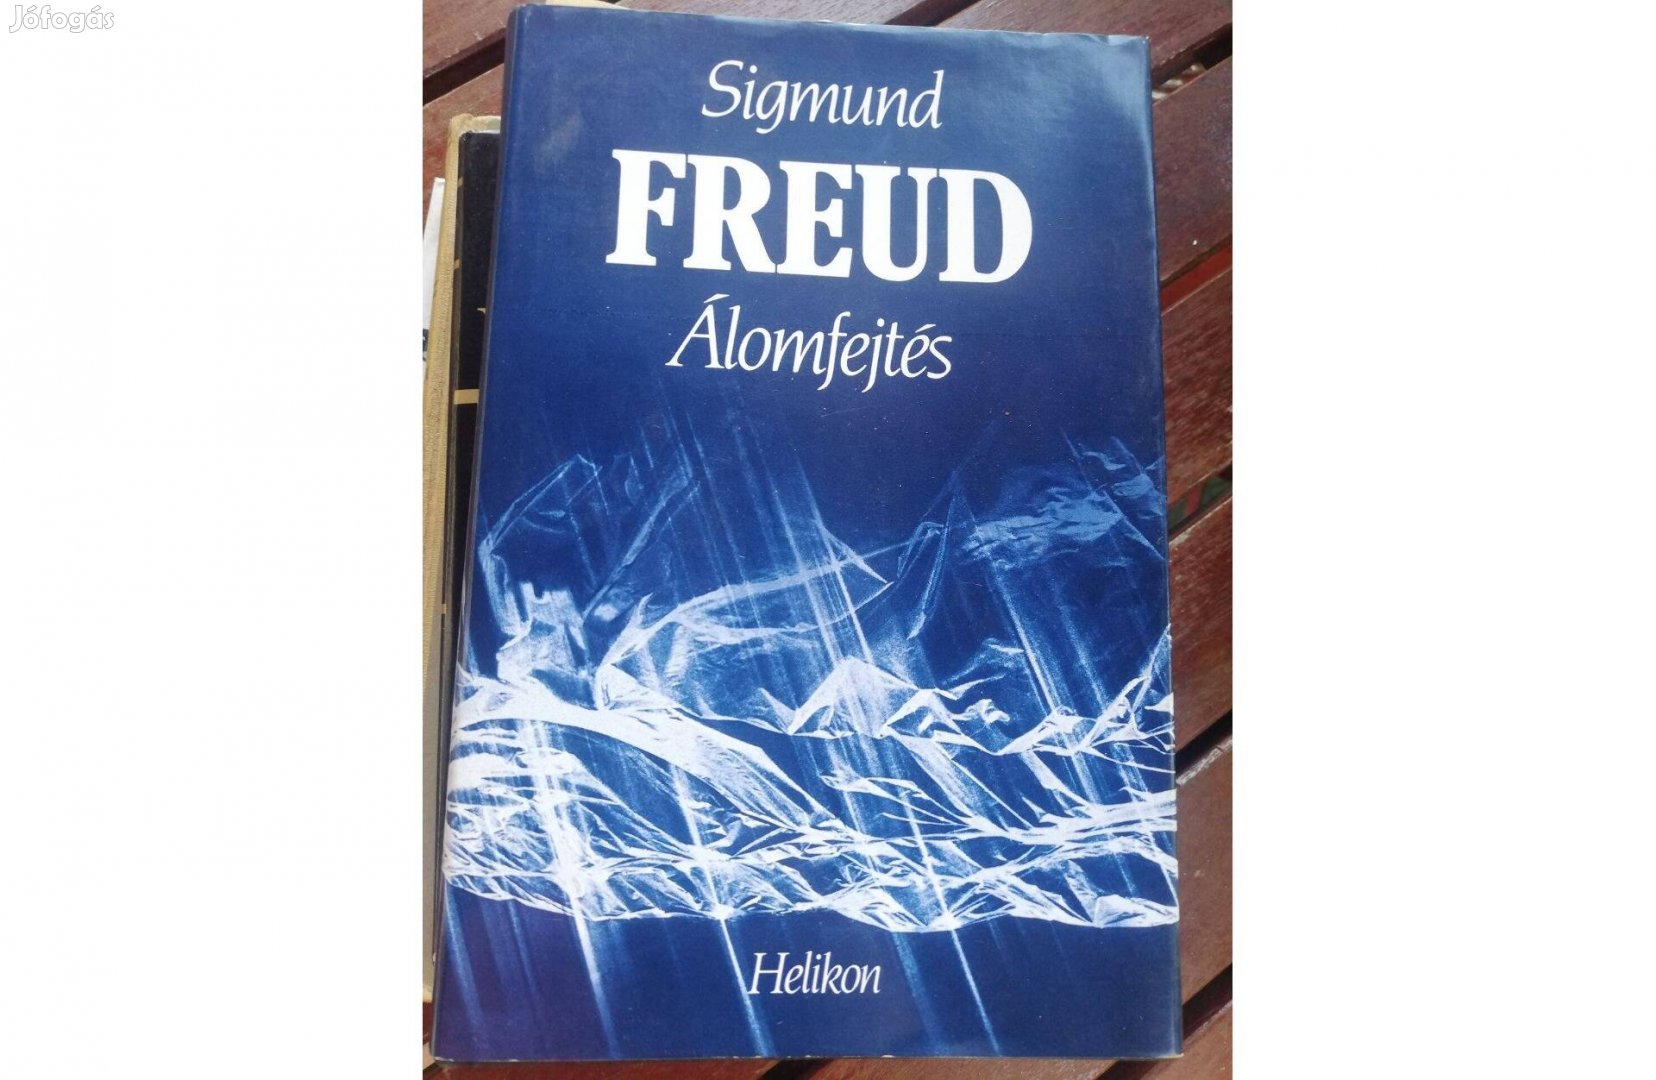 Sigmund Freud Álomfejtés c. könyve 1000 forintért eladó